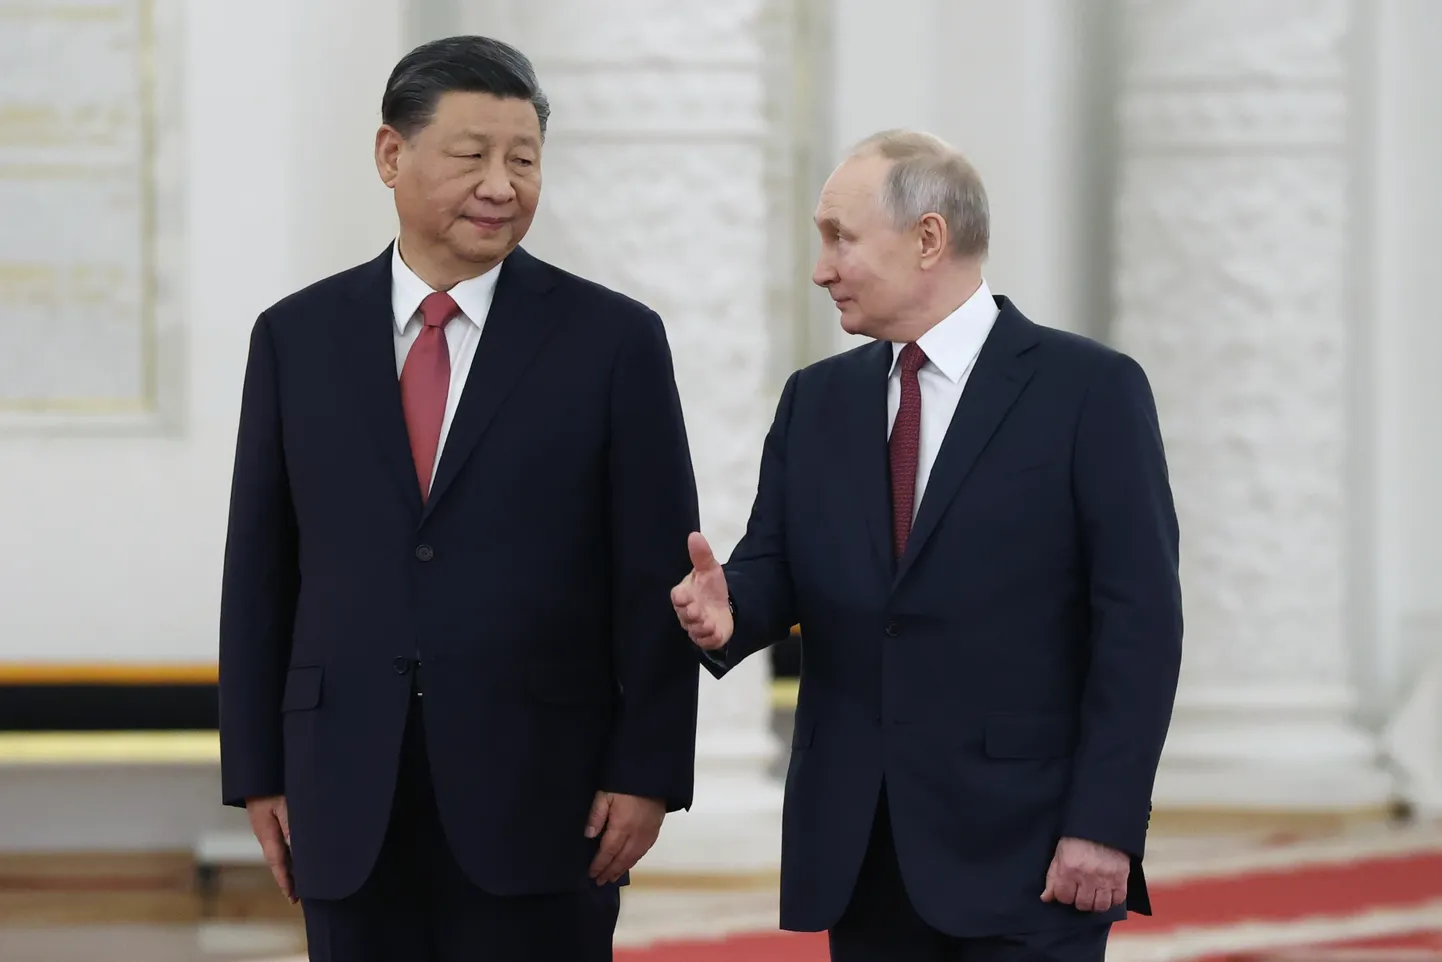 Hiina president Xi Jinping kohtumisel Vene presidendi Vladimir Putiniga